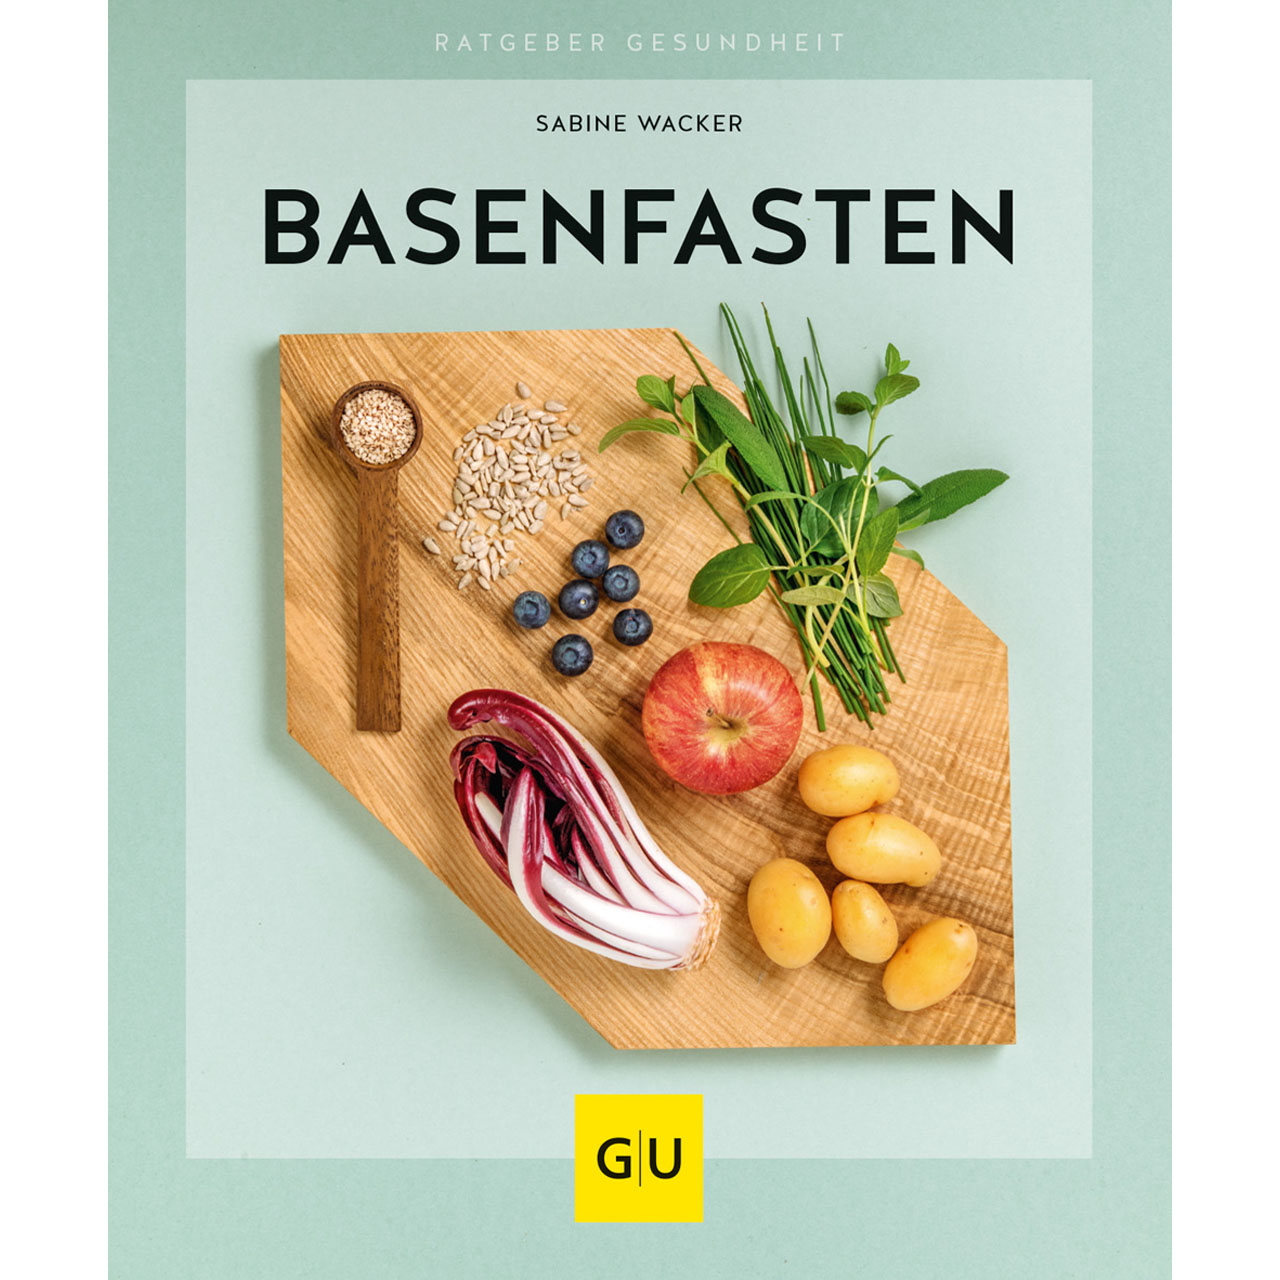 basenfasten: Sanft entlasten und dauerhaft abnehmen von Sabine Wacker, GU-Verlag